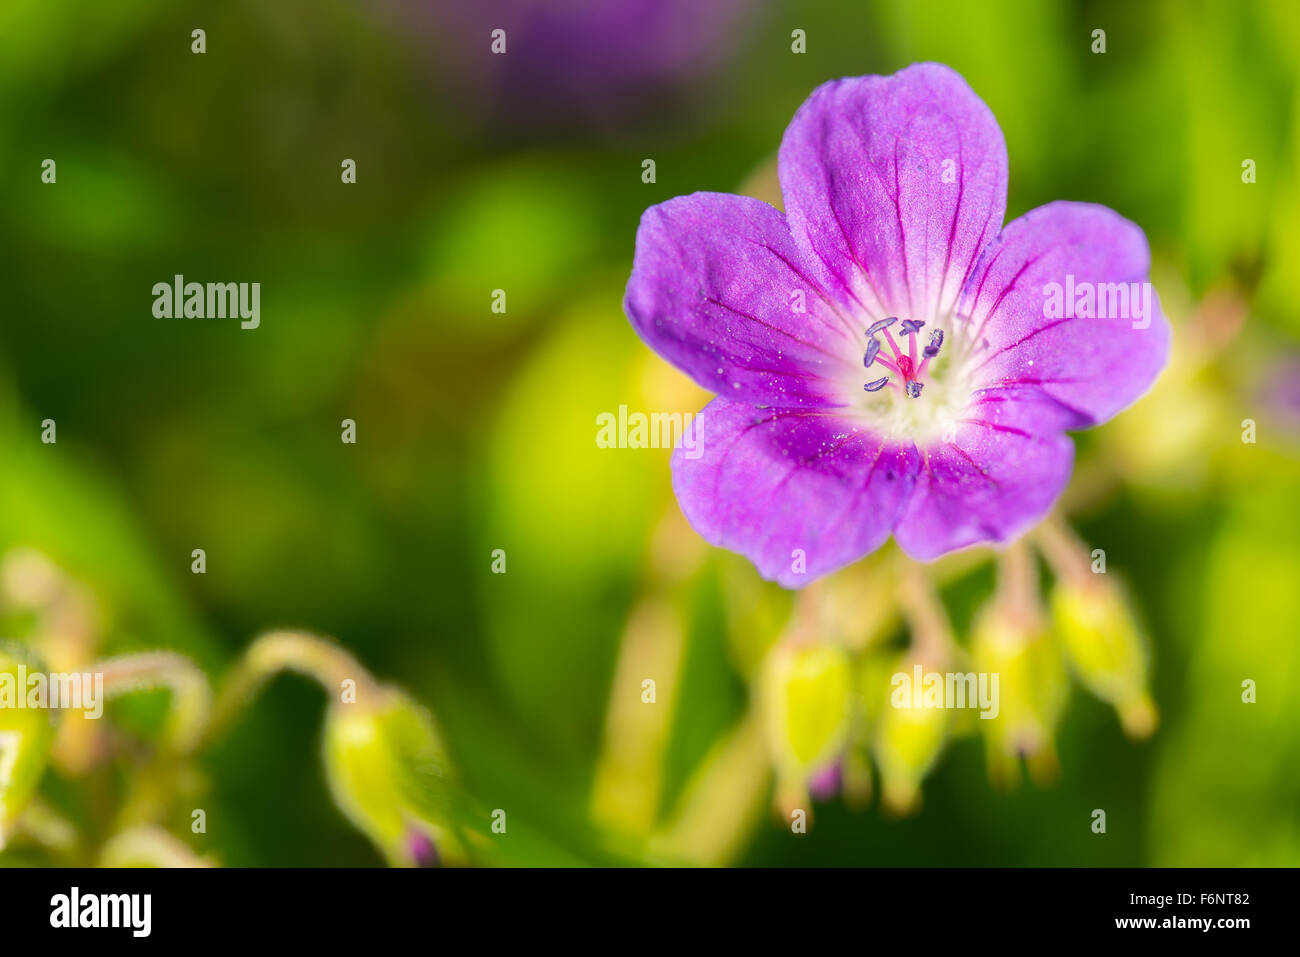 Closeup of single purple flower in meadow Stock Photo